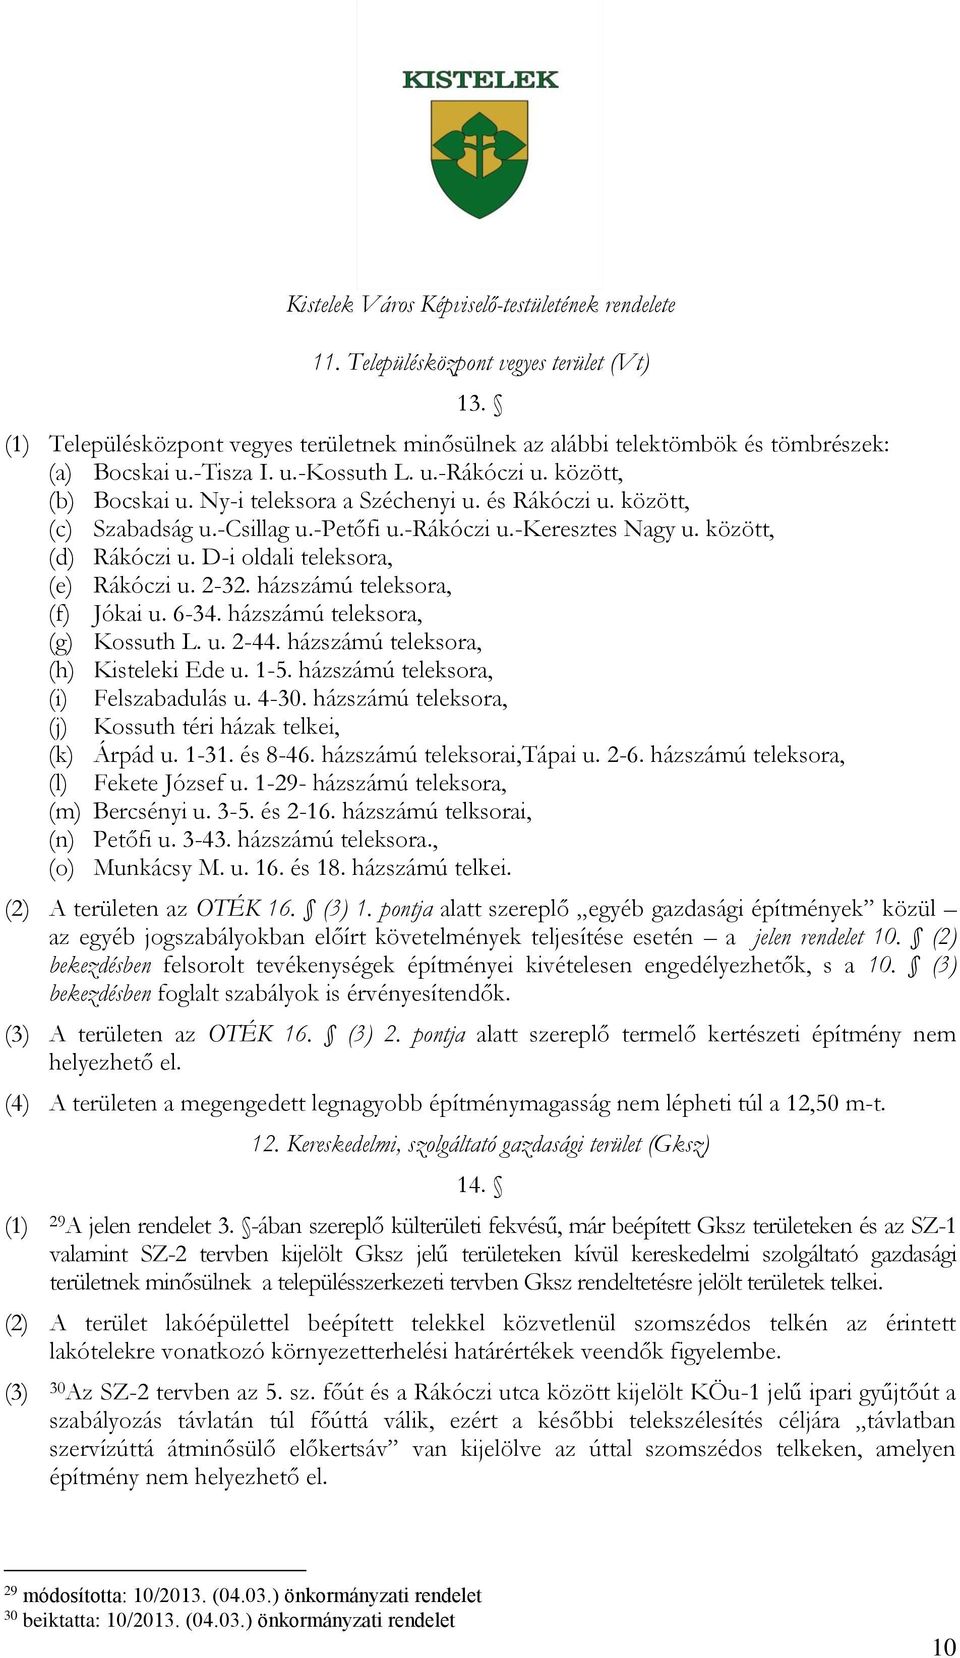 D-i oldali teleksora, (e) Rákóczi u. 2-32. házszámú teleksora, (f) Jókai u. 6-34. házszámú teleksora, (g) Kossuth L. u. 2-44. házszámú teleksora, (h) Kisteleki Ede u. 1-5.